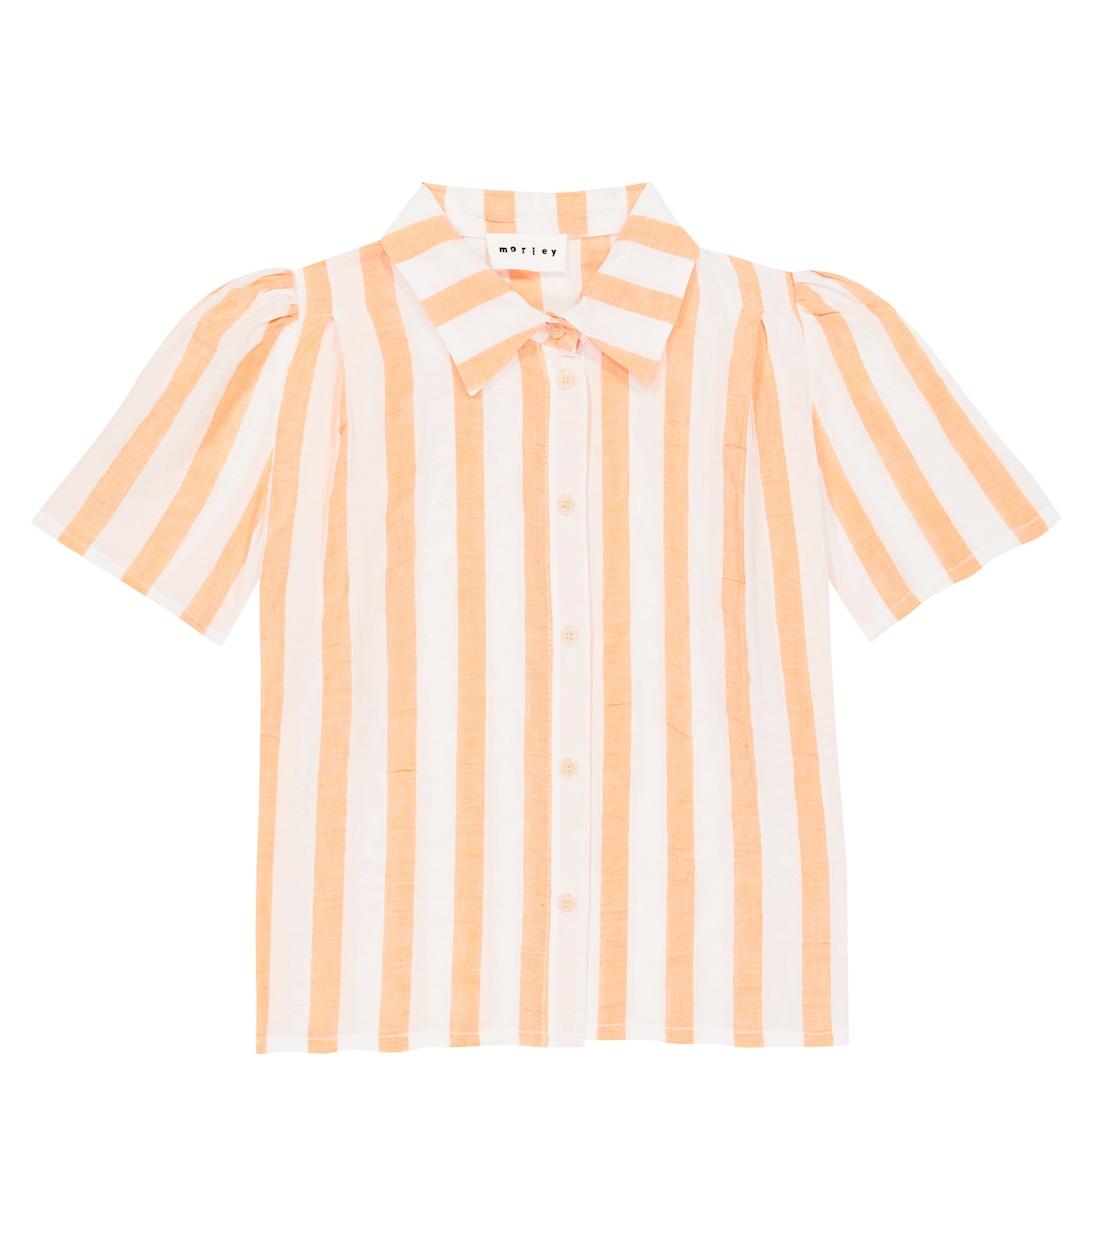 Рубашка из хлопка и льна в полоску со звездами Morley, оранжевый